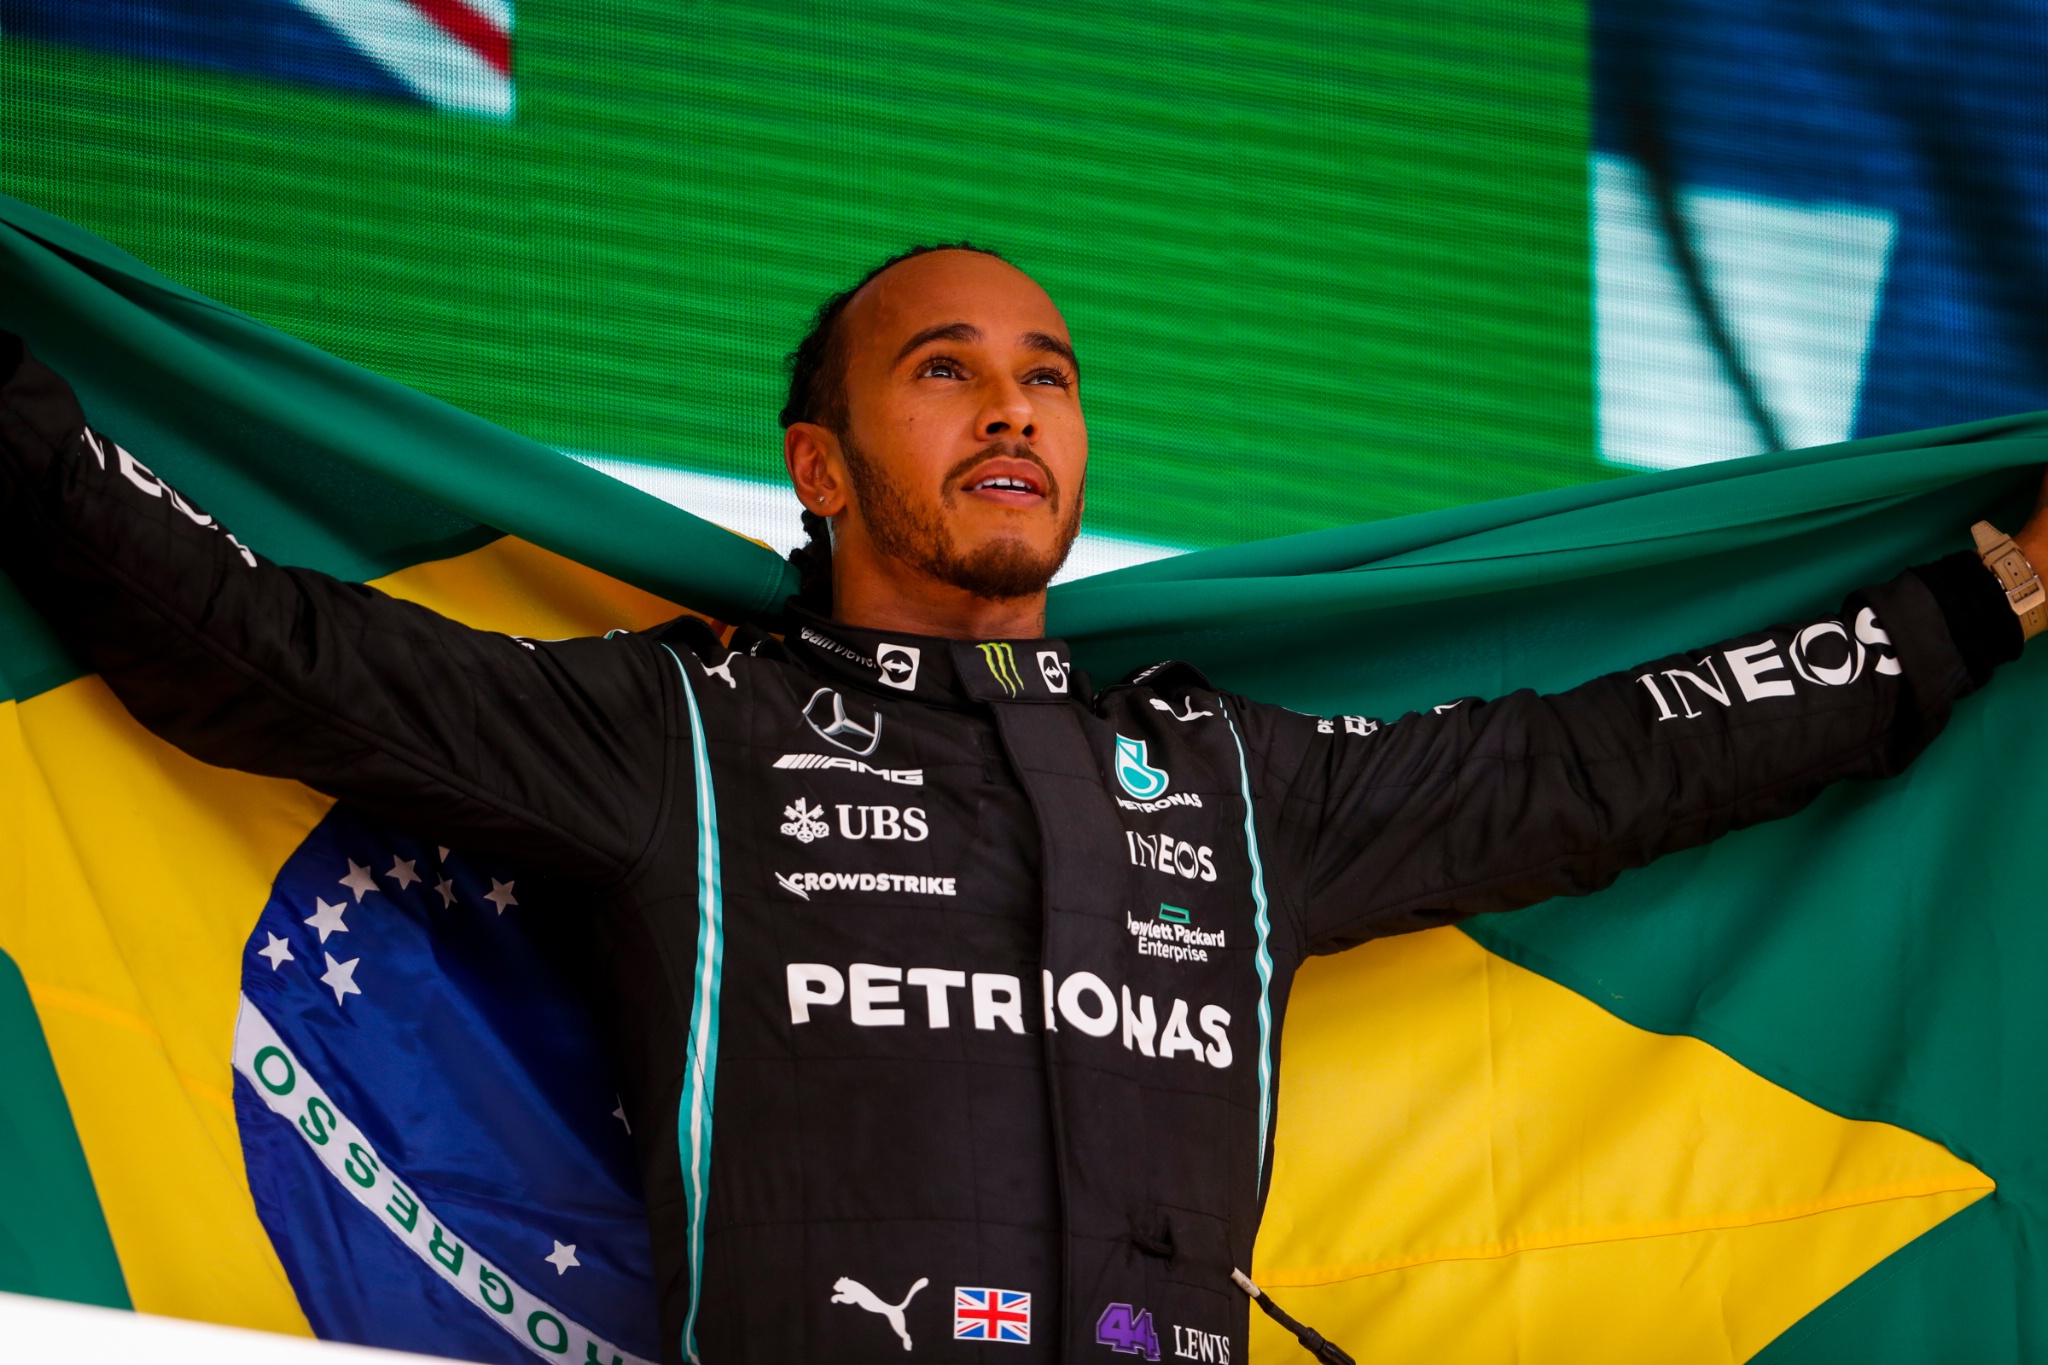 Pemenang balapan Lewis Hamilton (GBR) Mercedes AMG F1 merayakannya di podium.